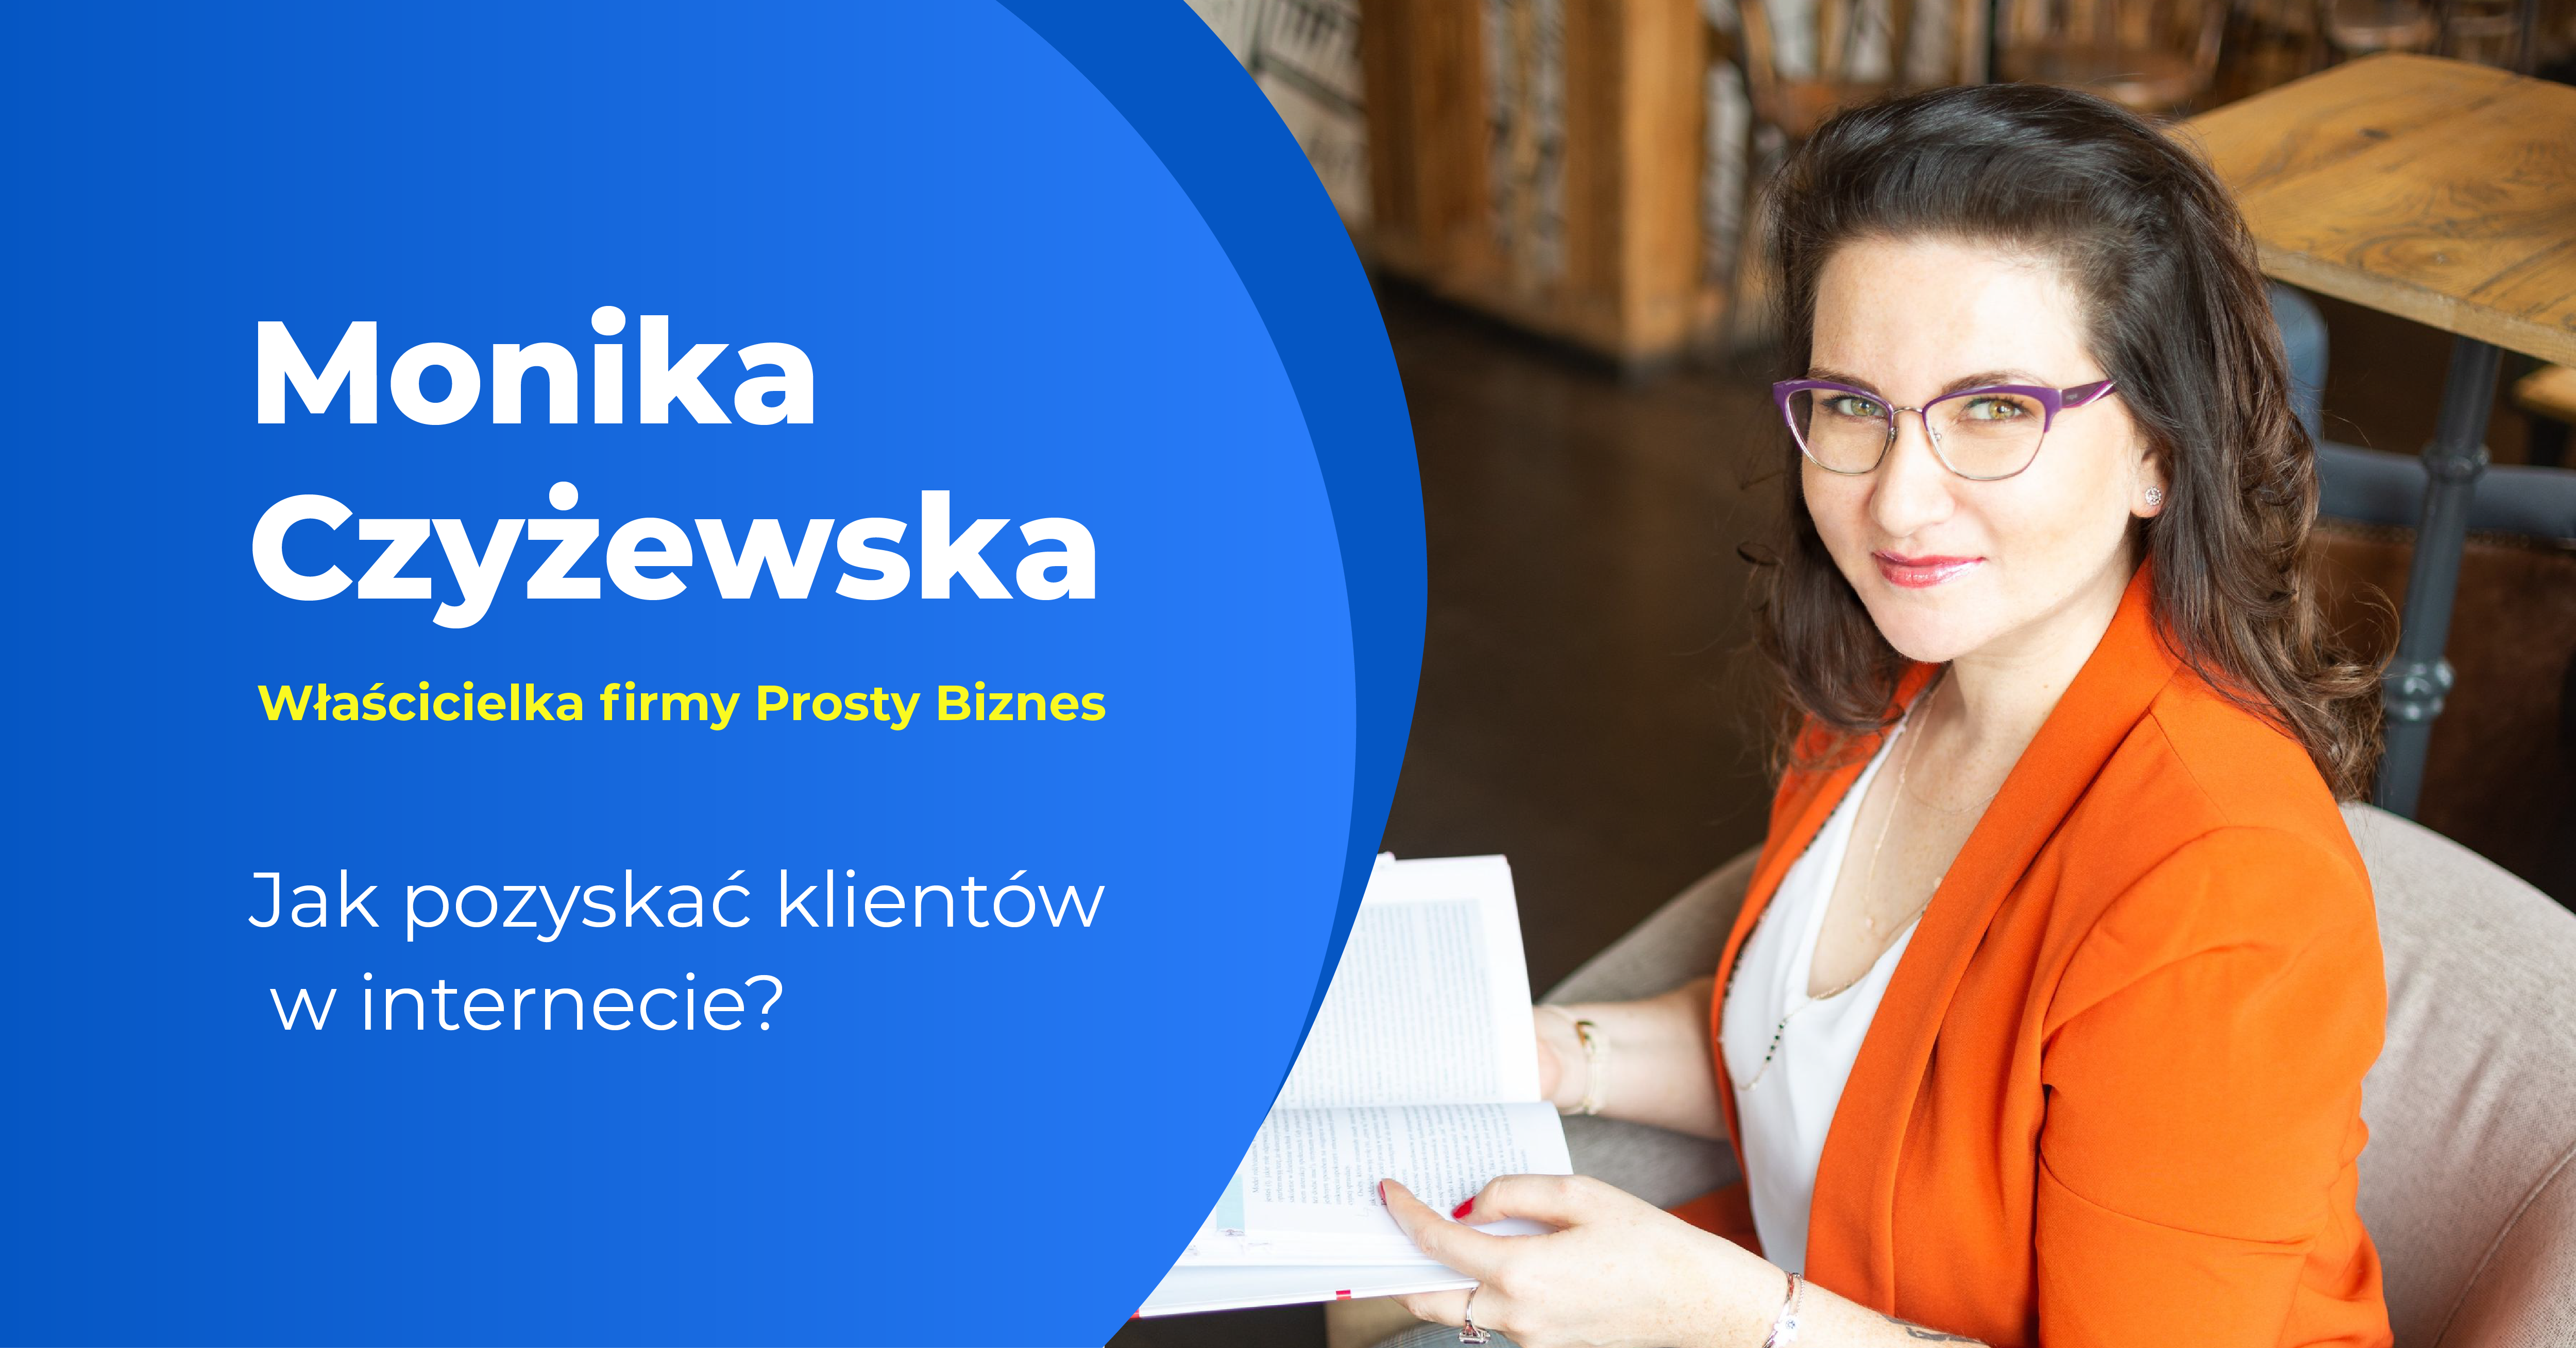 Monika Czyżewska - prostybiznes.com.pl